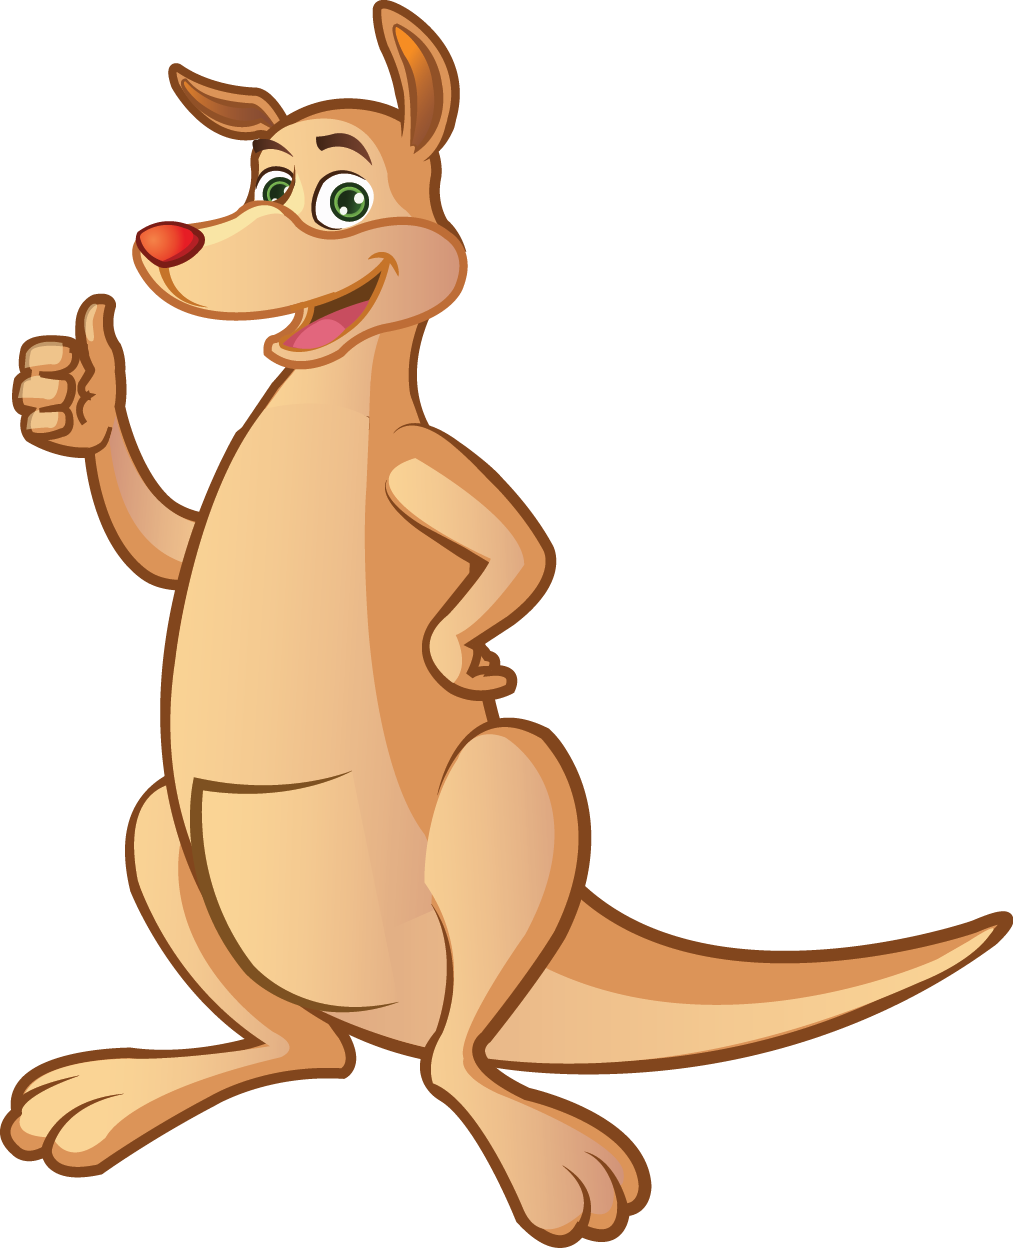 Animated Kangaroo Giving Thumbs Up PNG image